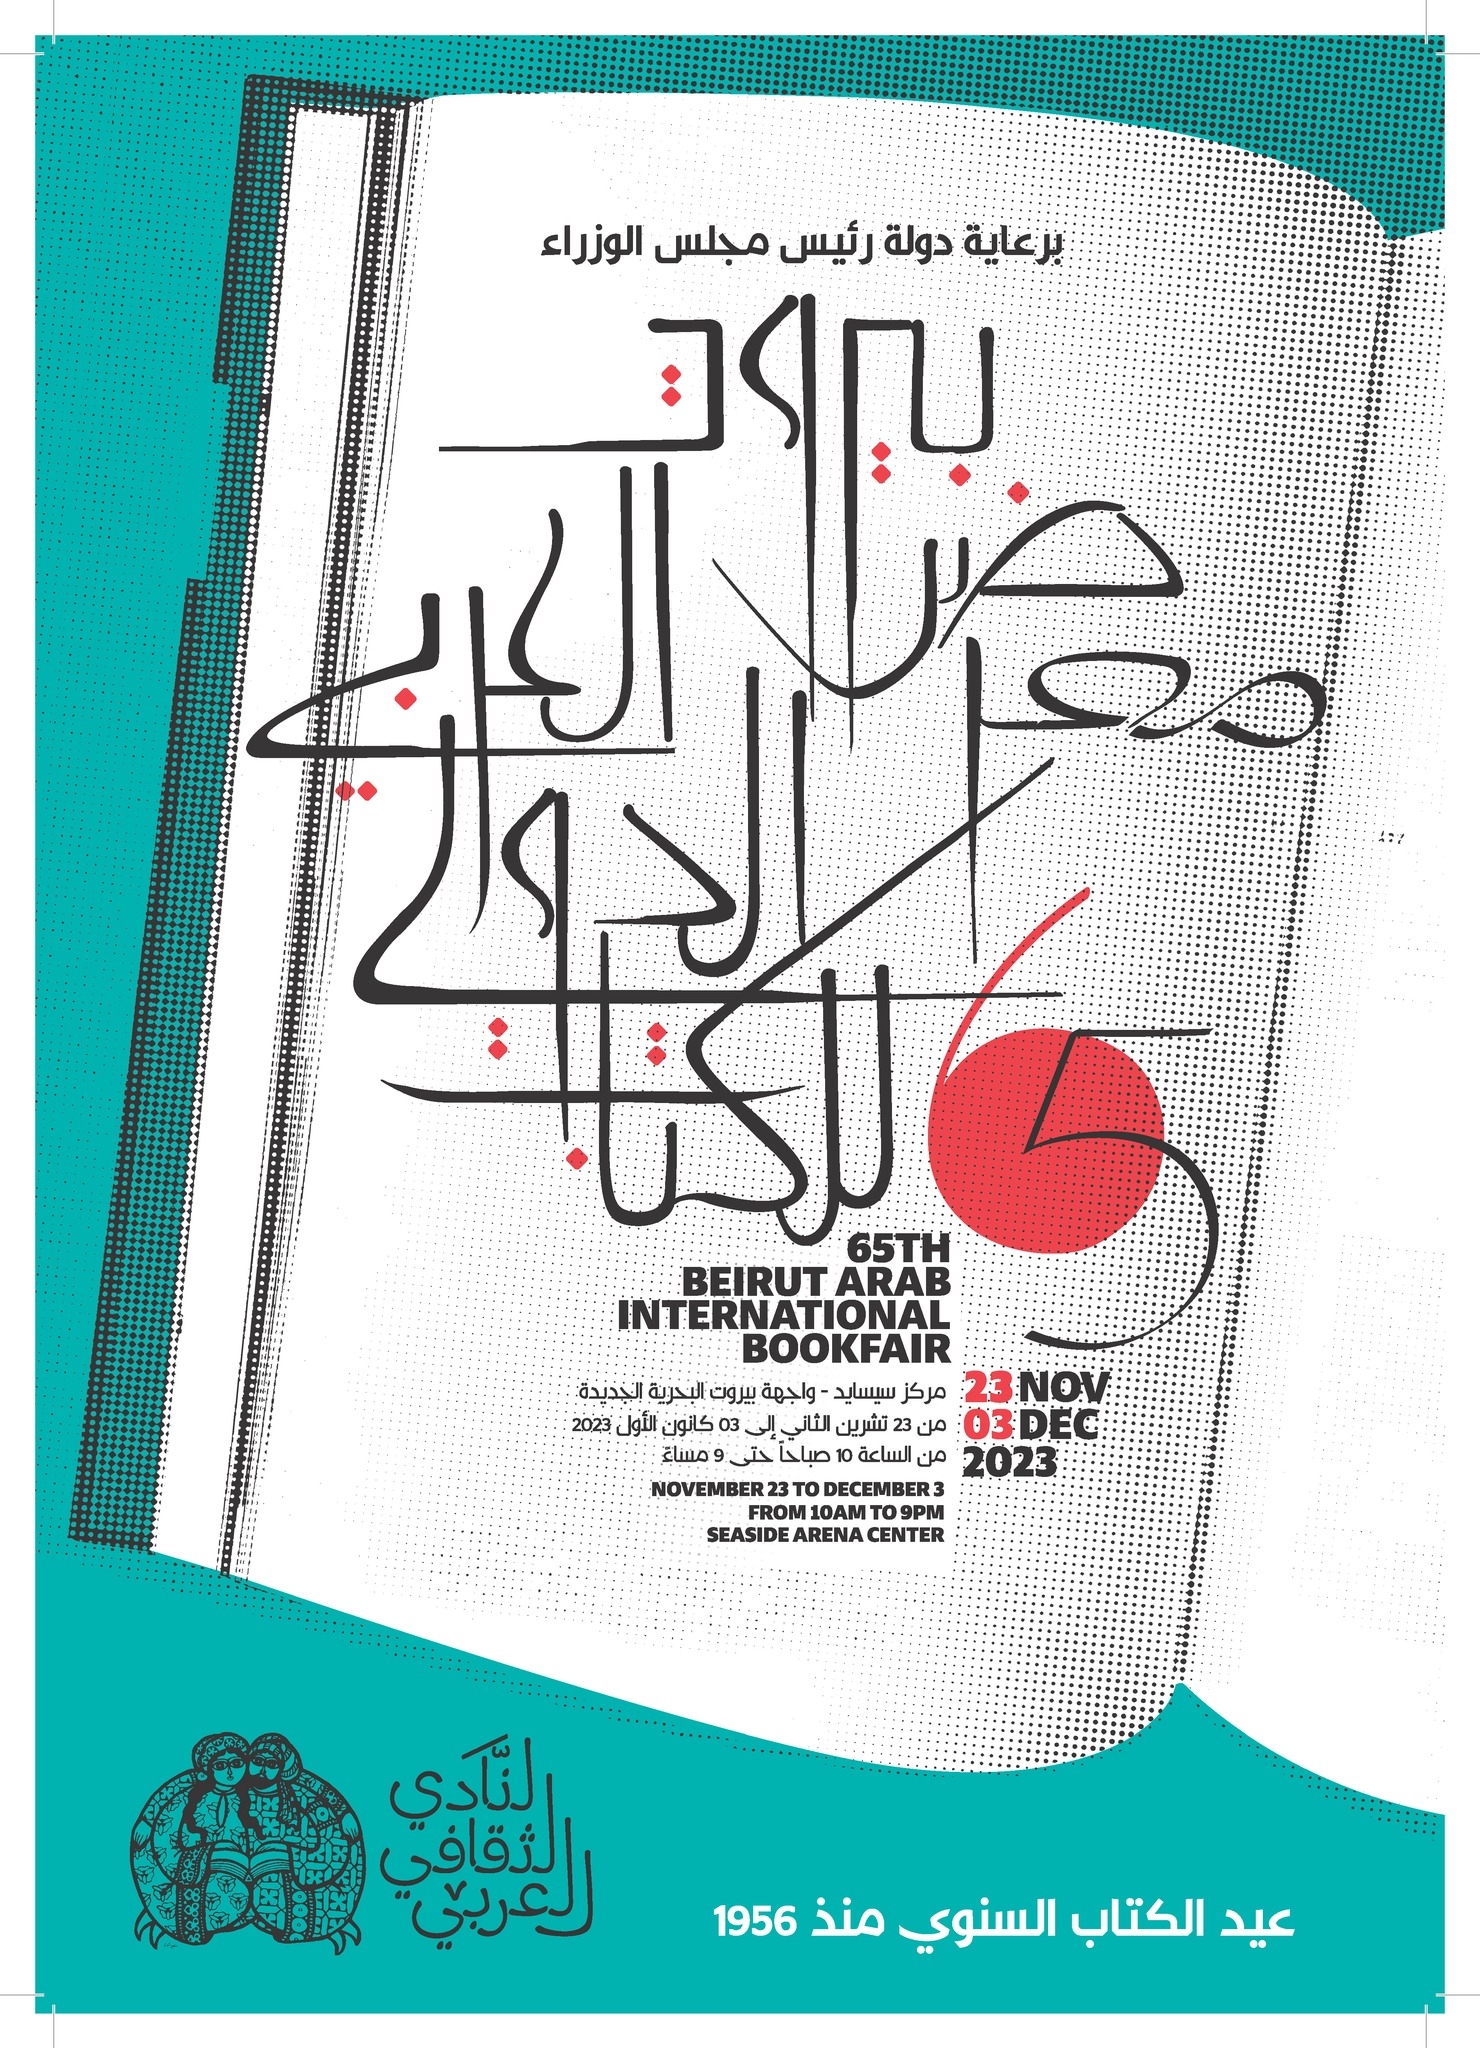 معرض بيروت العربى الدولى للكتاب 2023